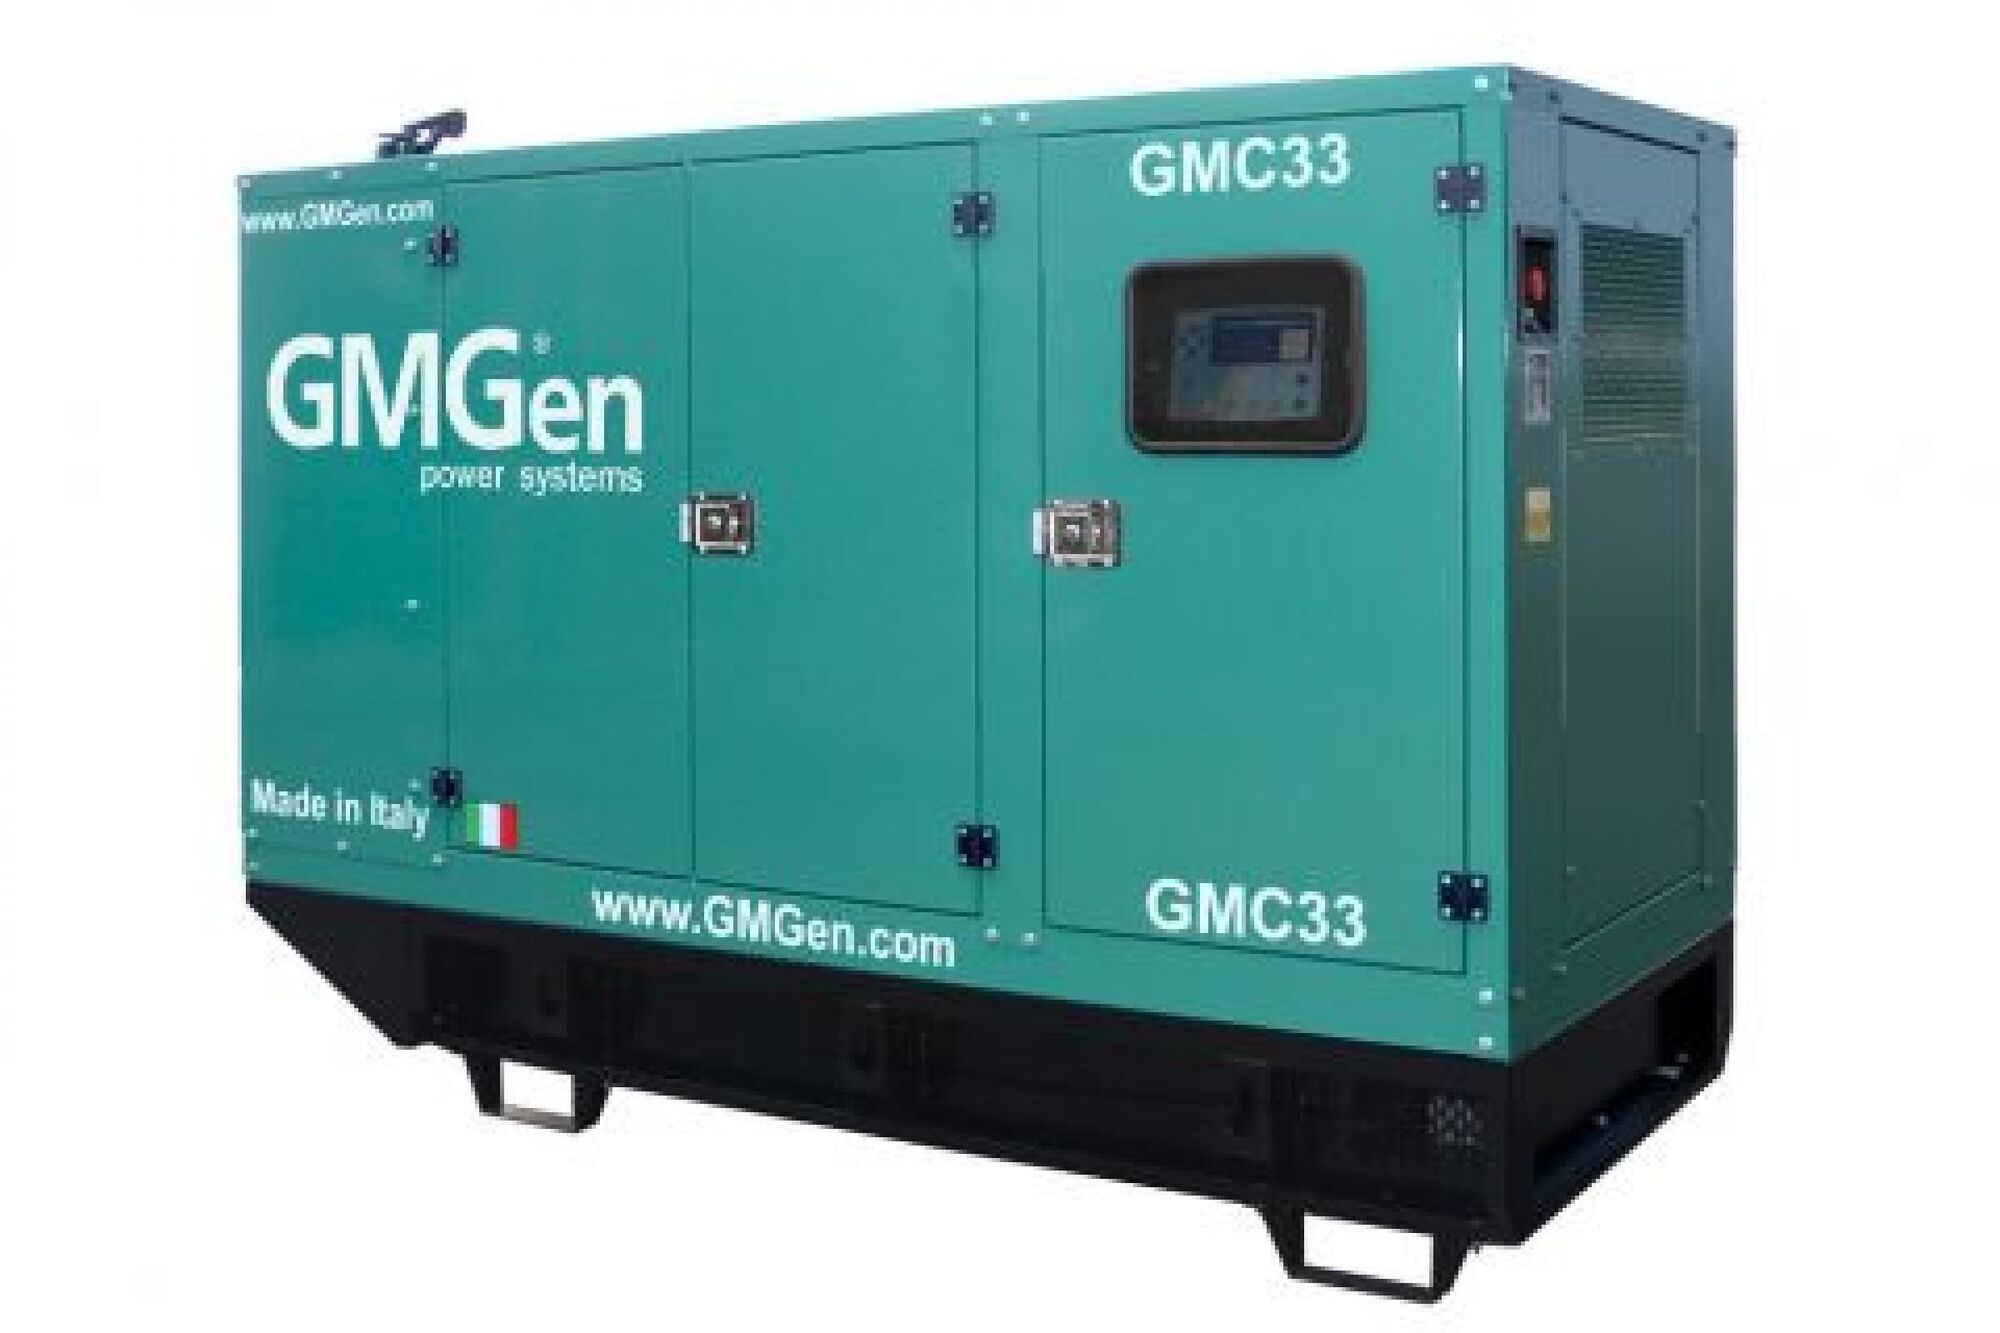 Дизель генератор GMGen Power Systems GMC33 24 кВт, 380/220 В в шумозащитном кожухе 502607